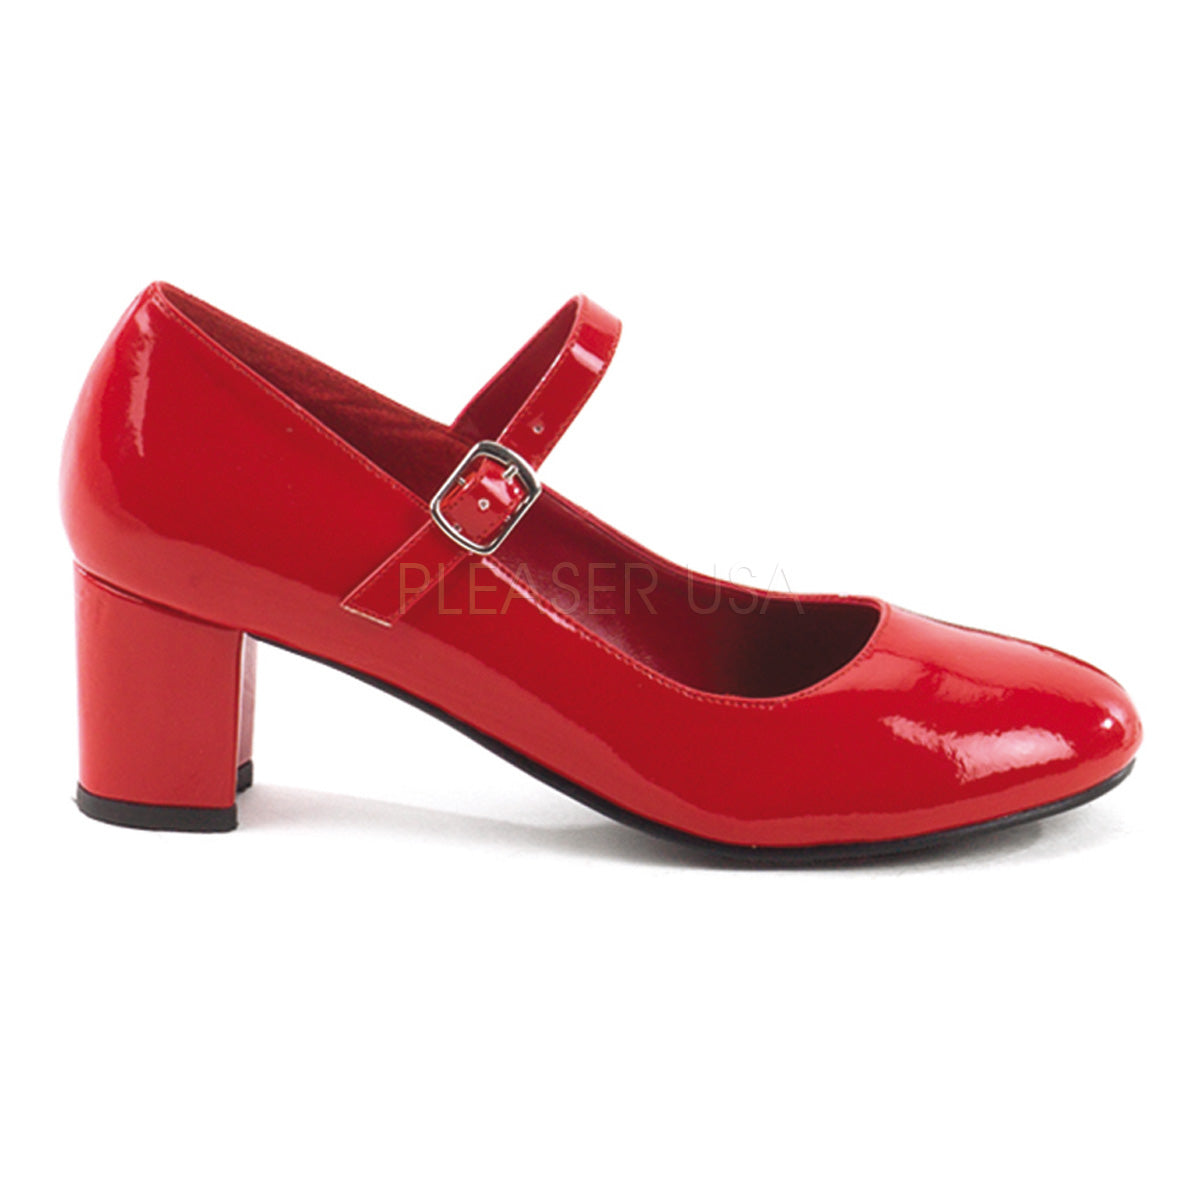 Red Schoolgirl costume shoes